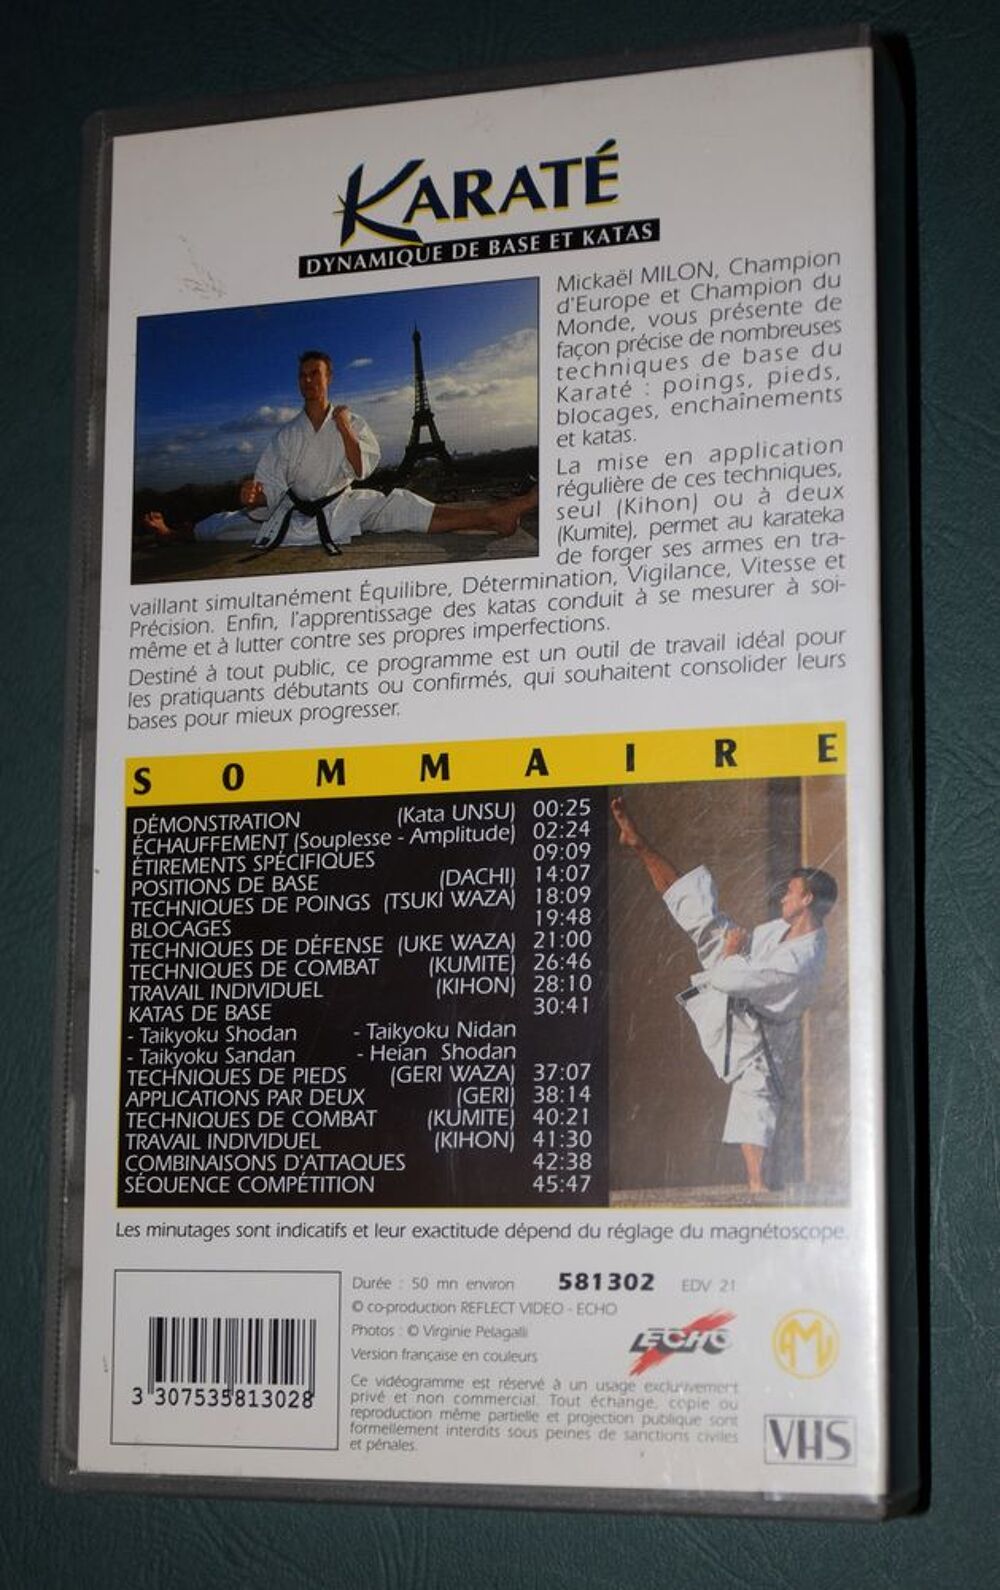 K7 VHS - Karat&eacute; Base et Katas - Mickael Milon. Livres et BD